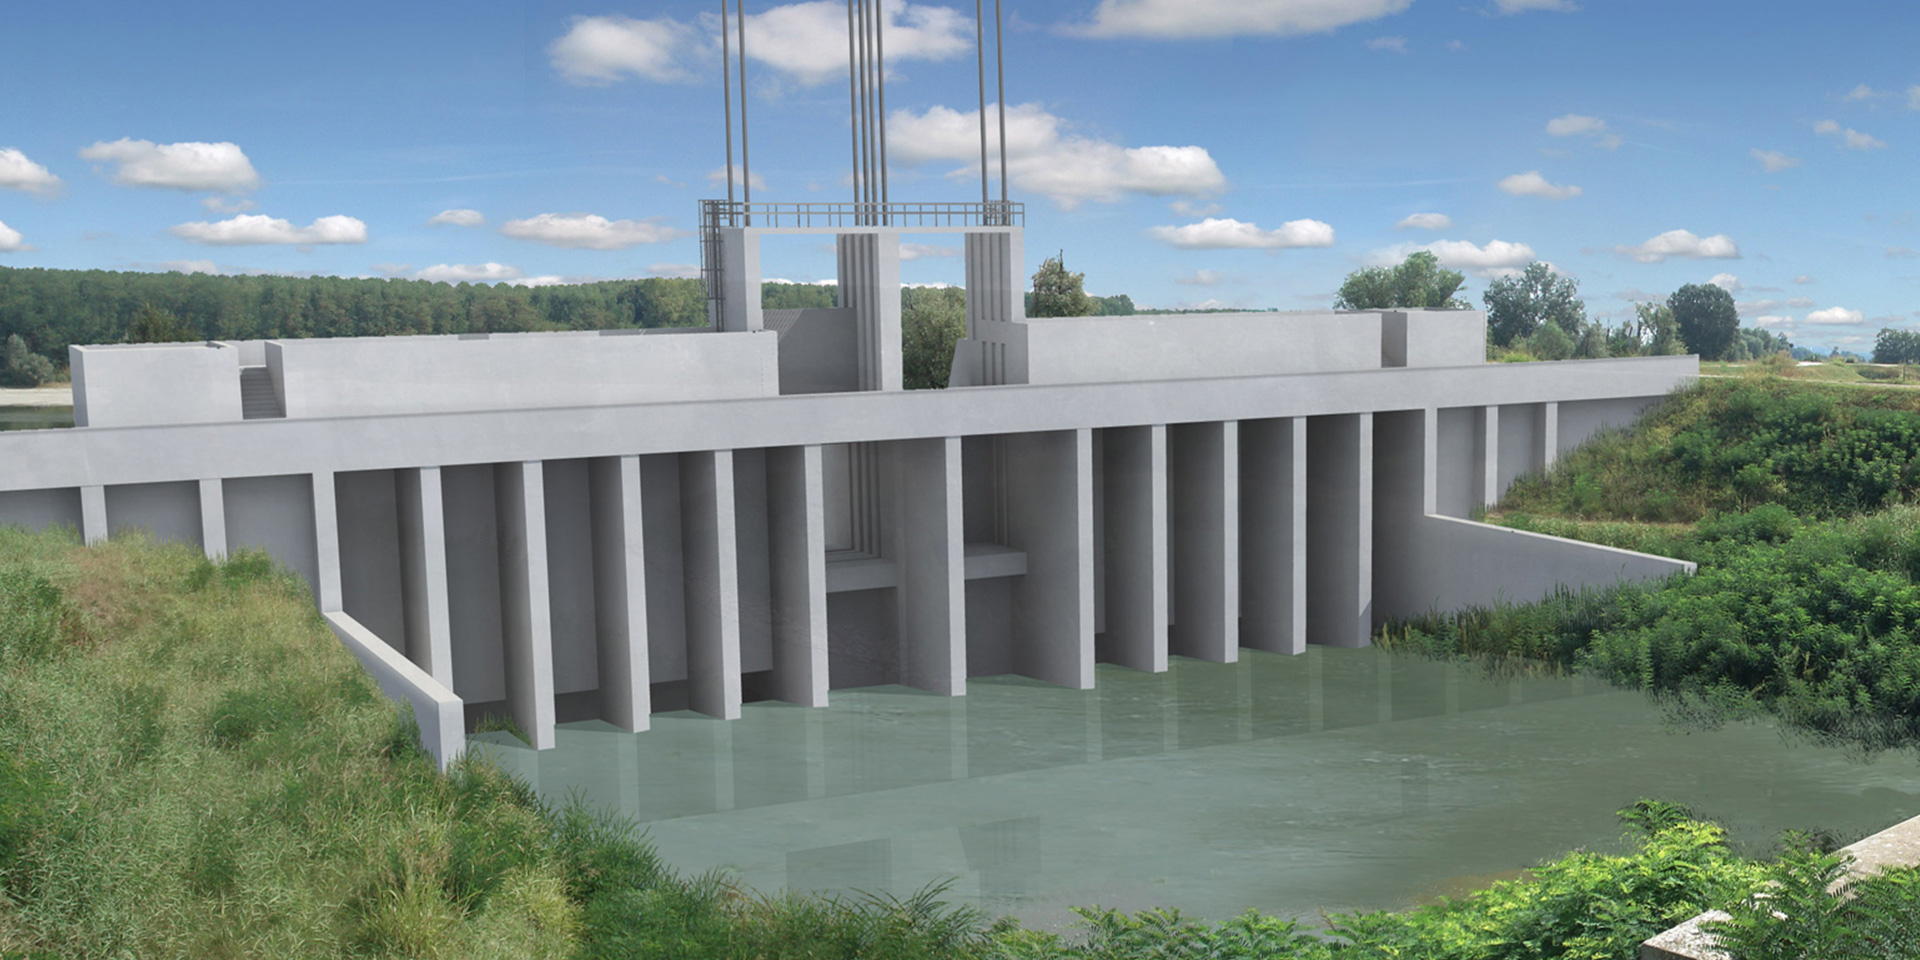 Adeguamento Impianto idrovoro di Moglia di Sermide, Binini Partners, Società di architettura e ingegneria